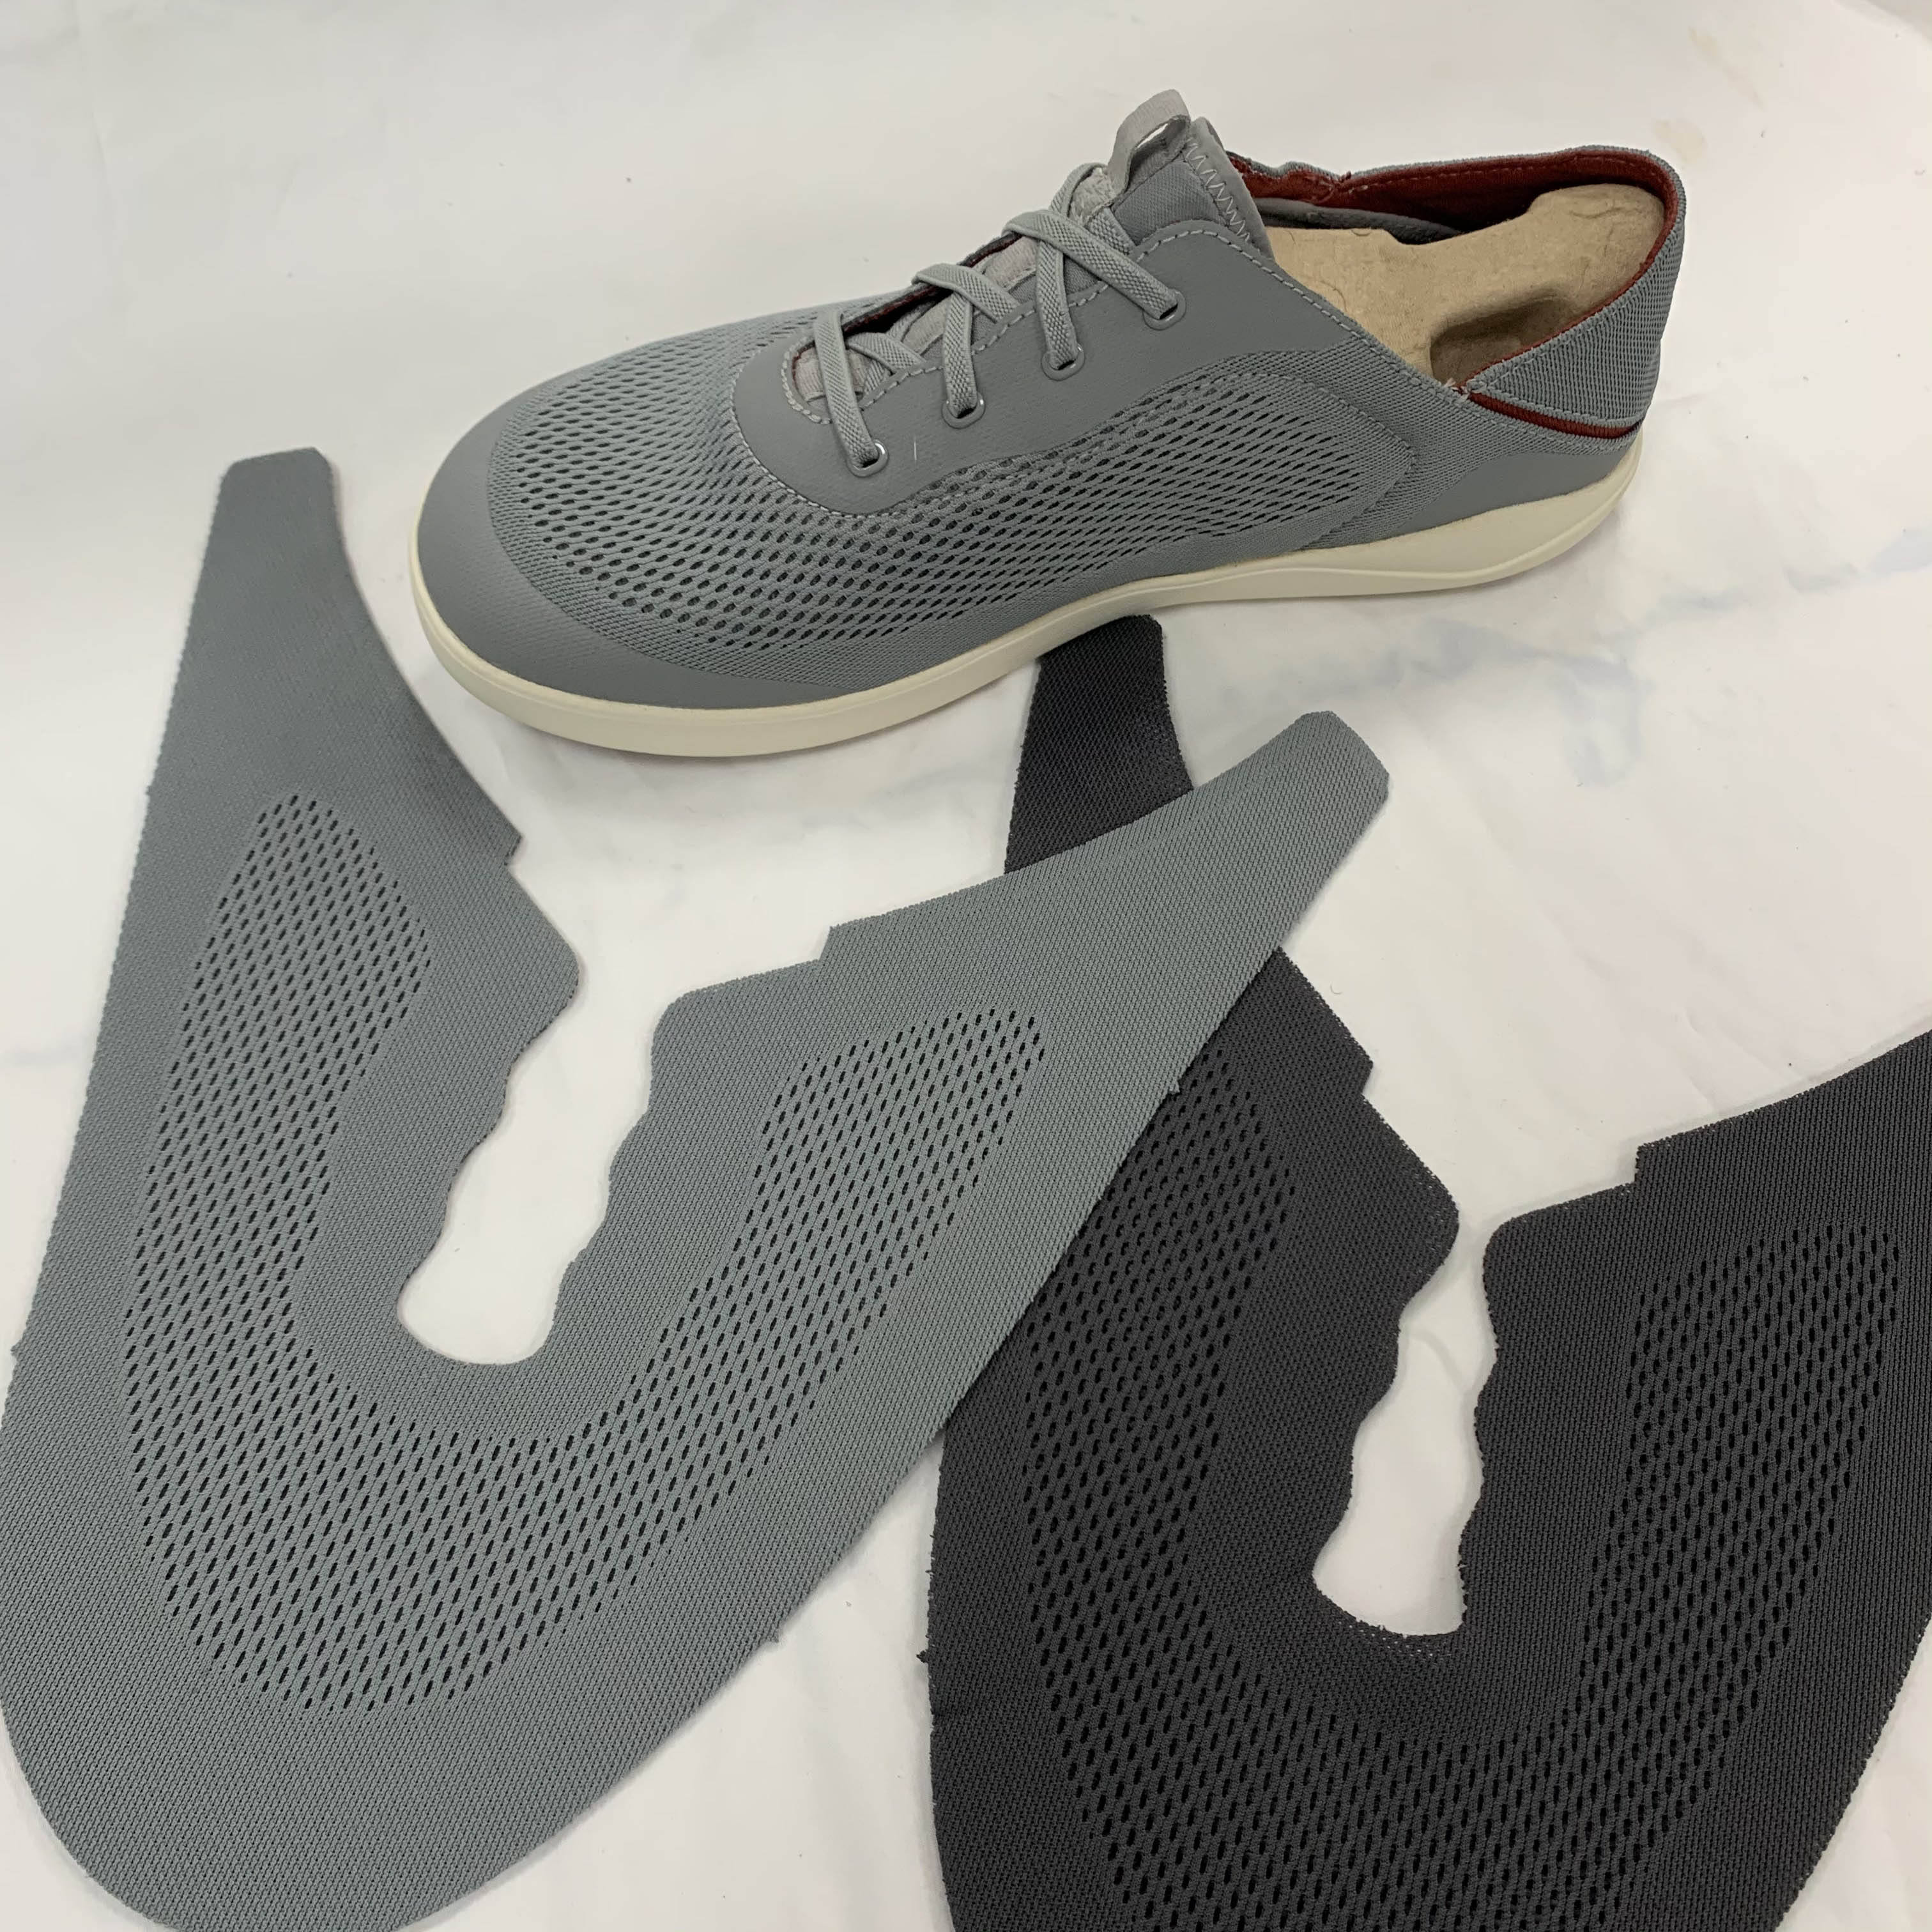 定制加工生产贾卡鞋面鞋材面料透气休闲鞋运动鞋材料一体成型鞋面